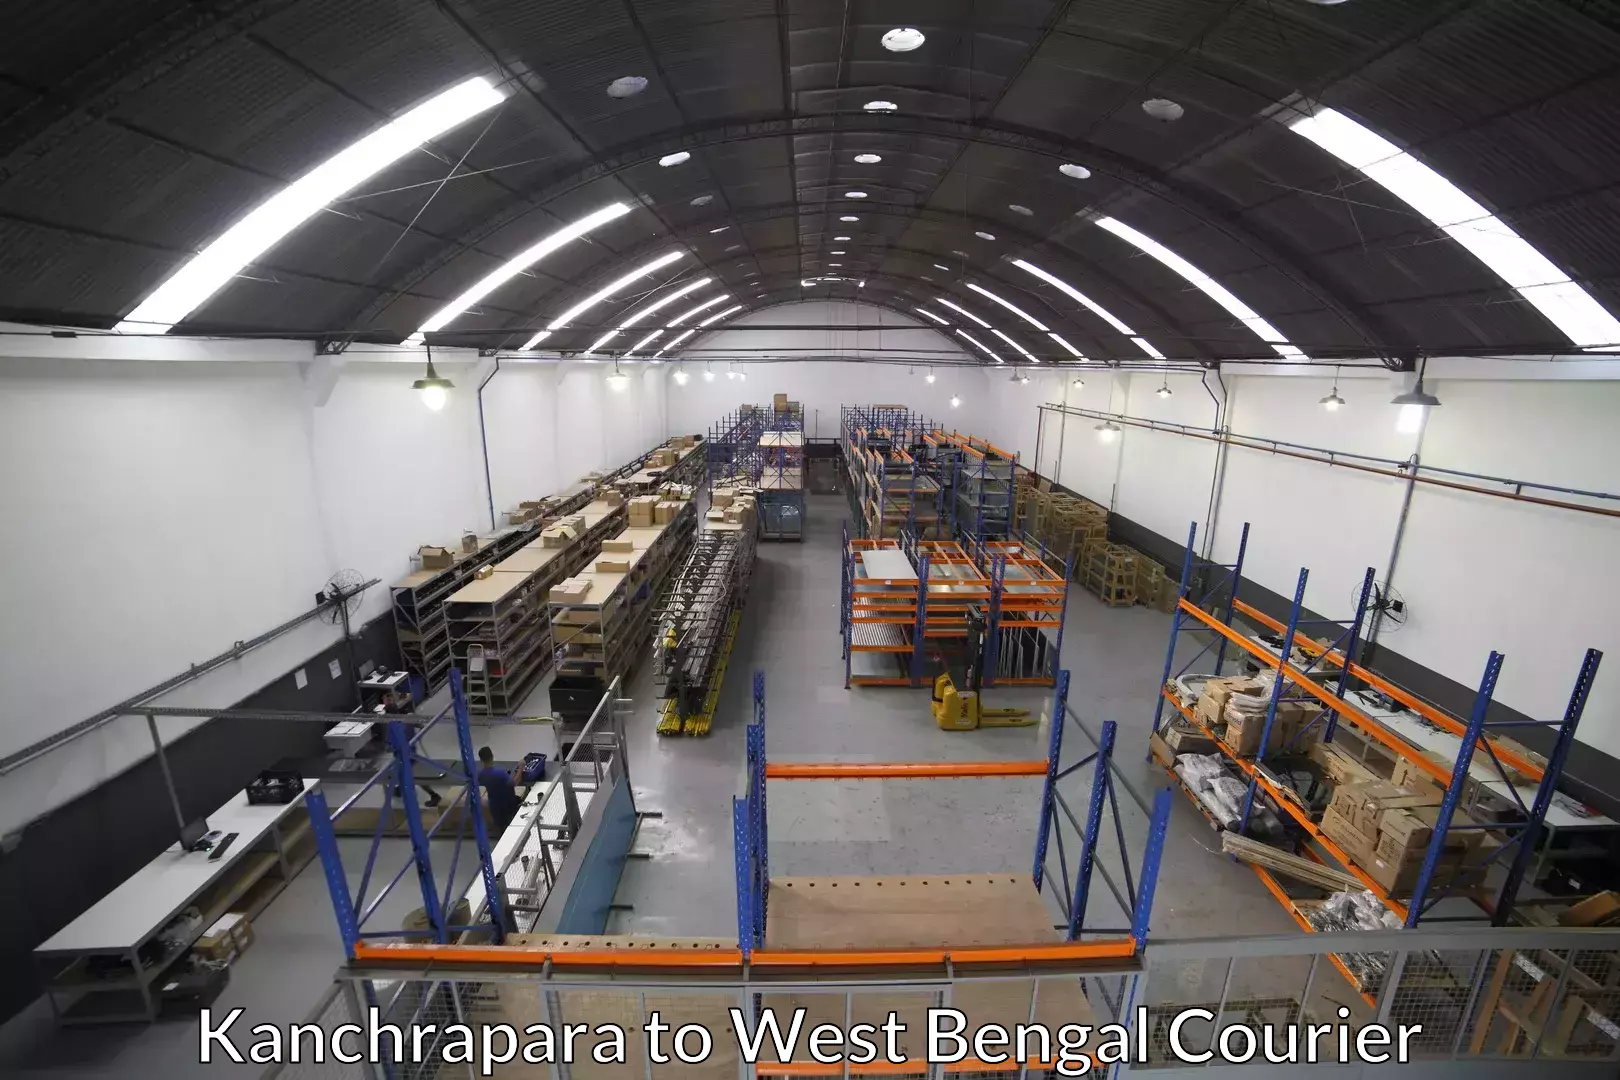 Furniture transport experts Kanchrapara to Kumargram